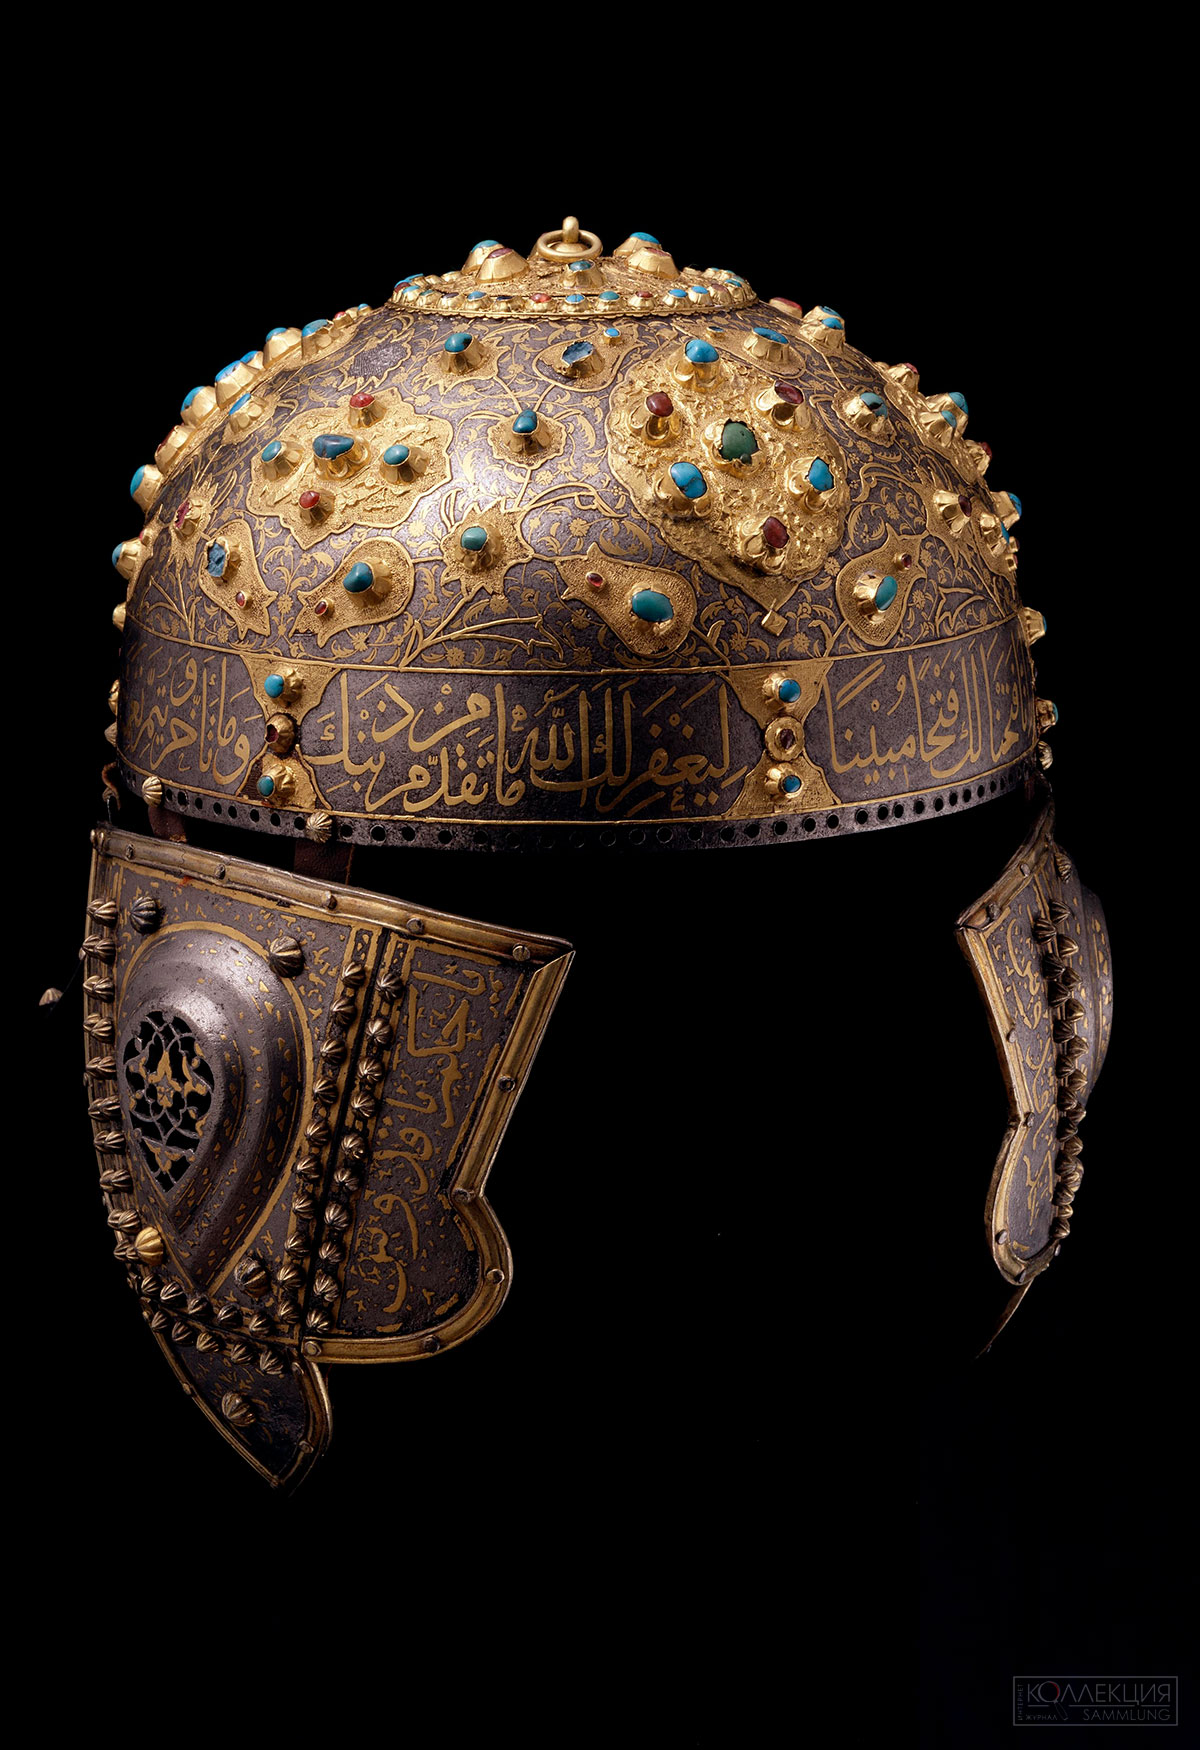 Шлем (приписывался казанскому хану Шах-Али). Османская империя, вторая половина XVI в. Музеи Московского Кремля